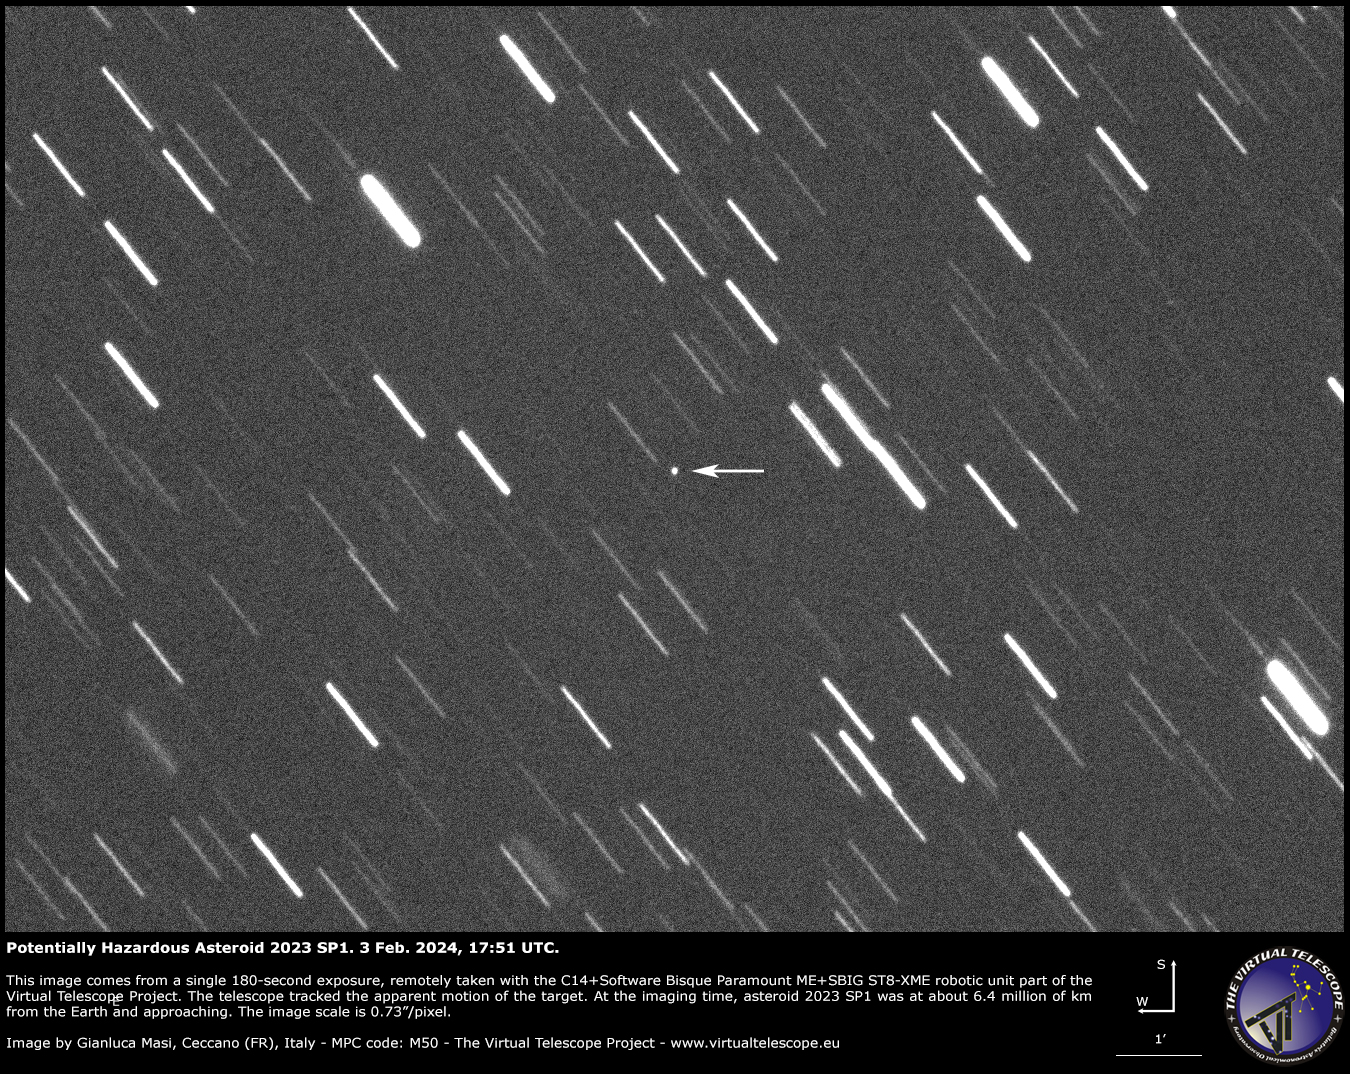 Potentially Hazardous Asteroid 2023 SP1: 3 Feb. 2024.